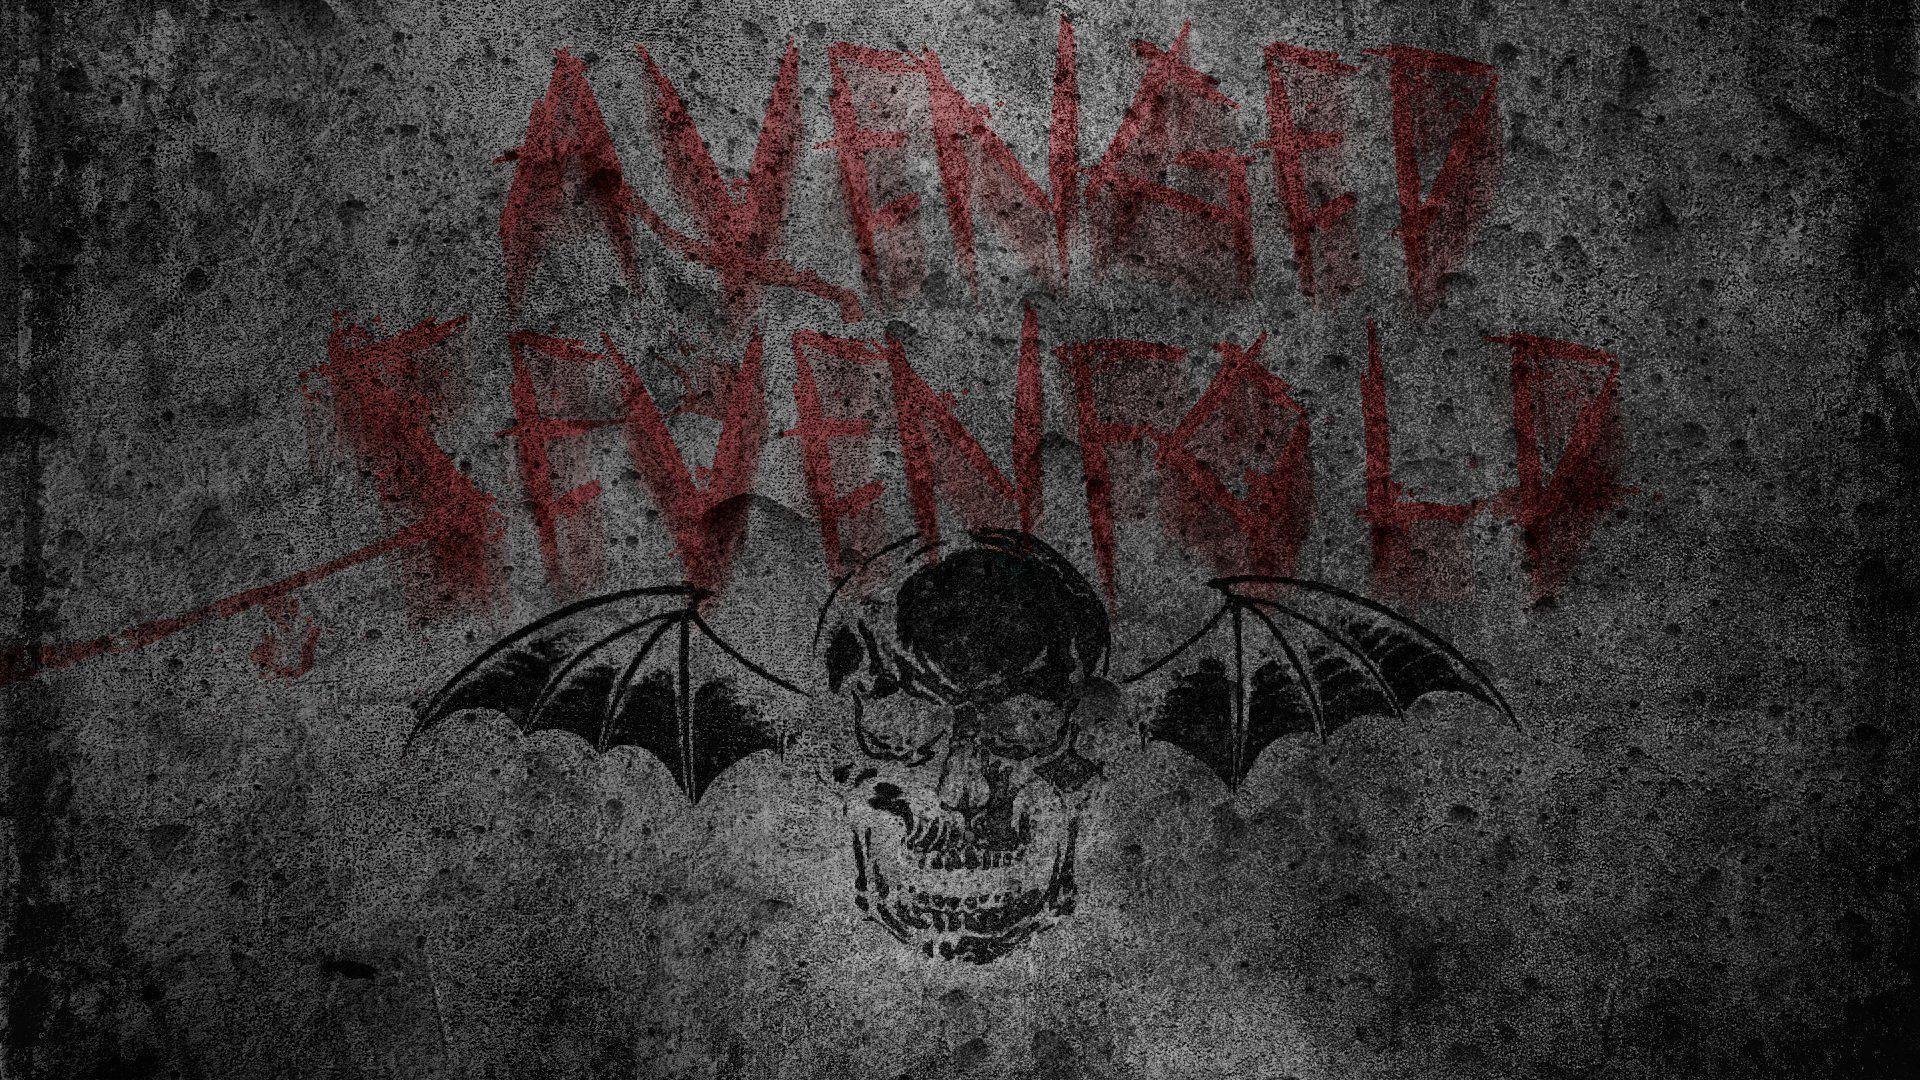 Avenged Sevenfold Wallpaper. Fiction Avenged Sevenfold Wallpaper, Avenged Sevenfold Wallpaper and Avenged Nightmare Wallpaper